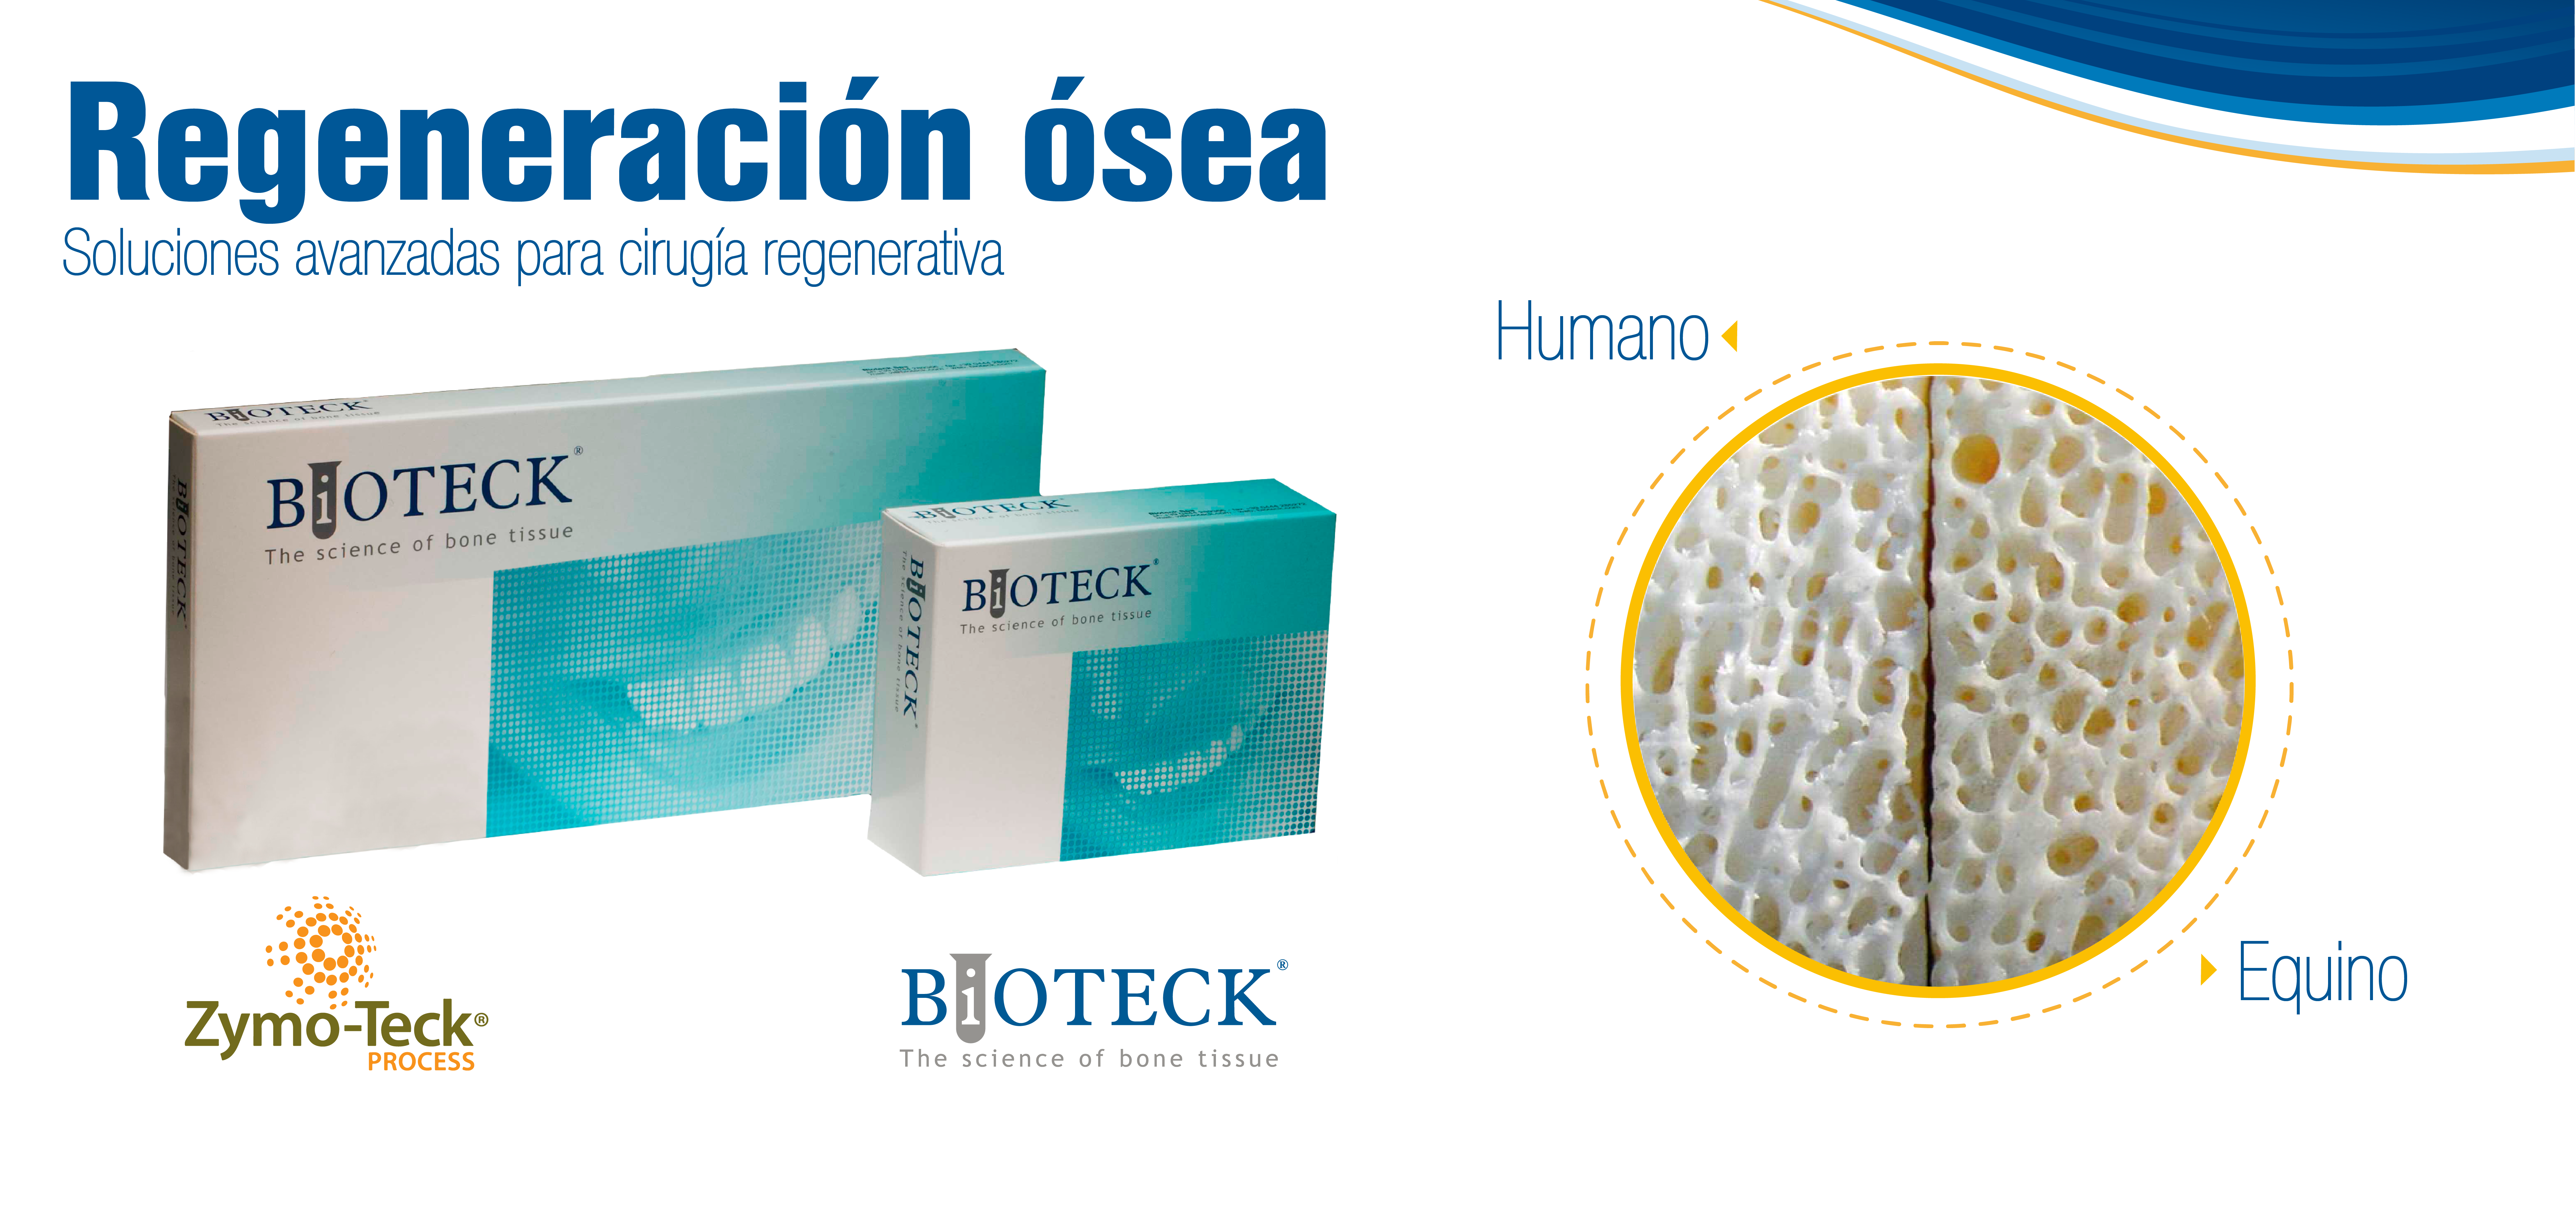 Bioteck regeneración osea